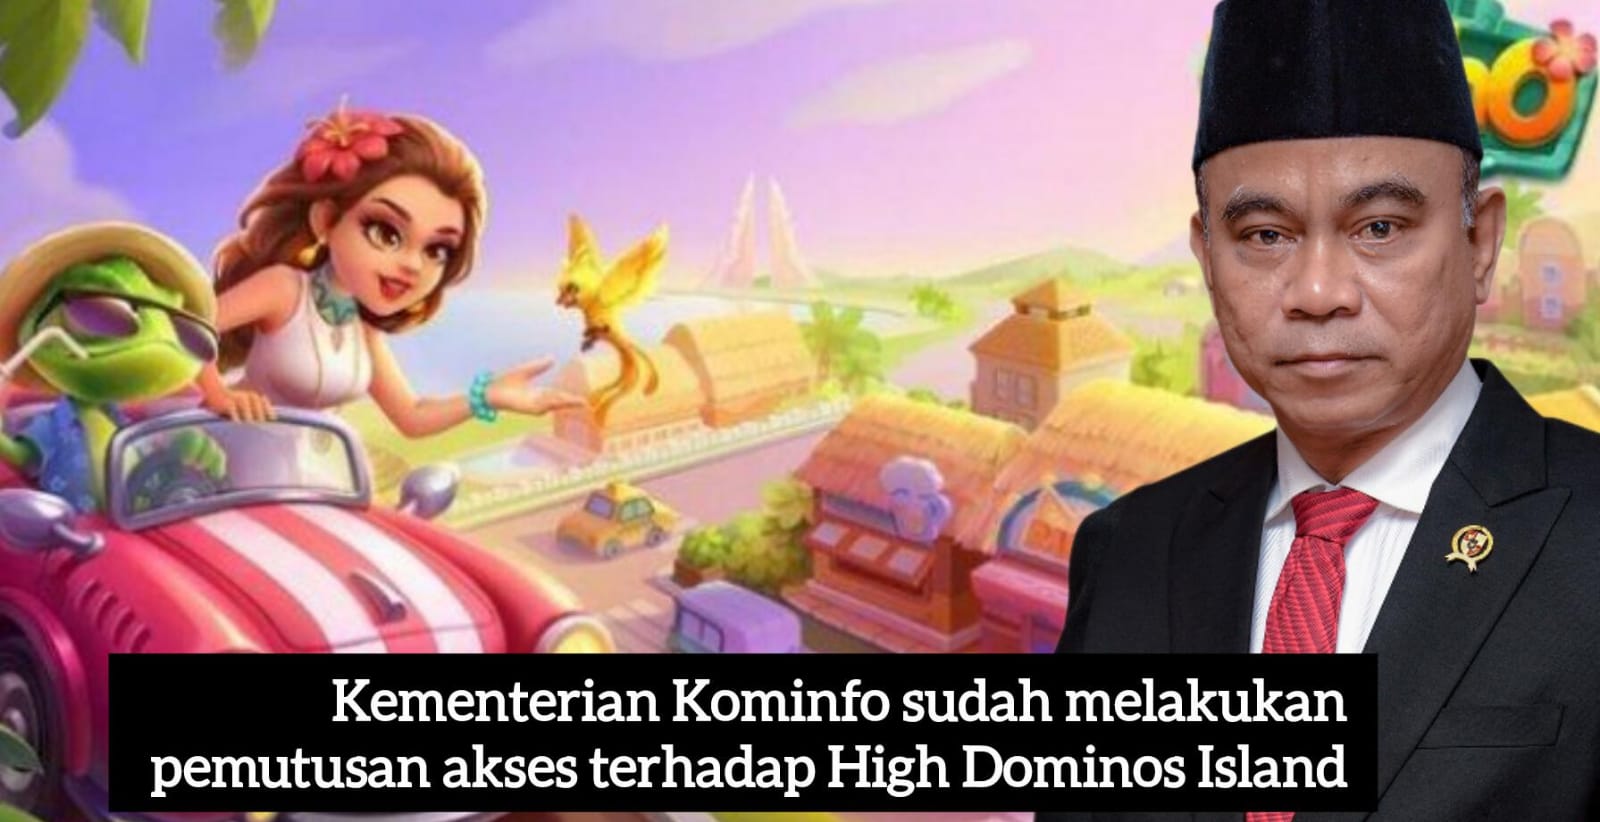 Higgs Domino Island Tutup,Menteri Kominfo Budi Arie Setiadi : Batasi Gerak Pelaku Judi Online!